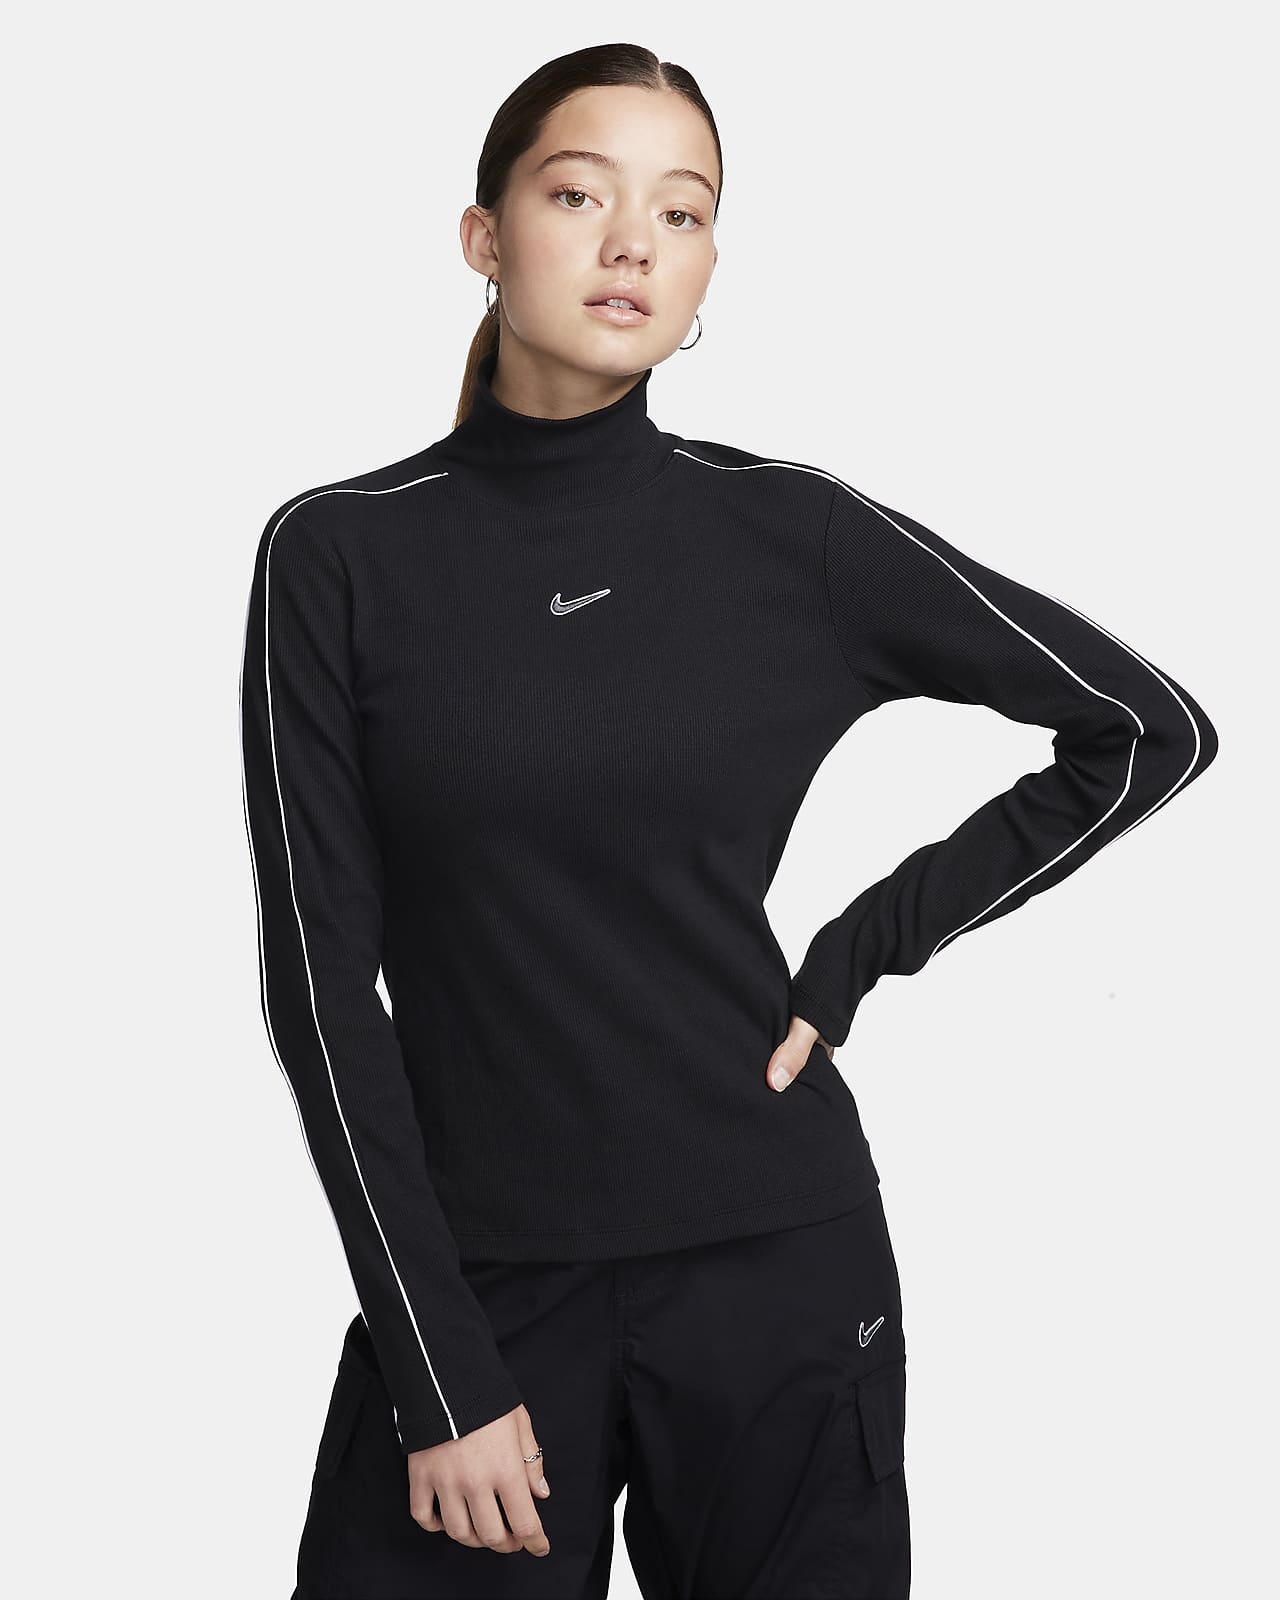 Hauts de Running à Manches Longues pour Femme. Nike FR